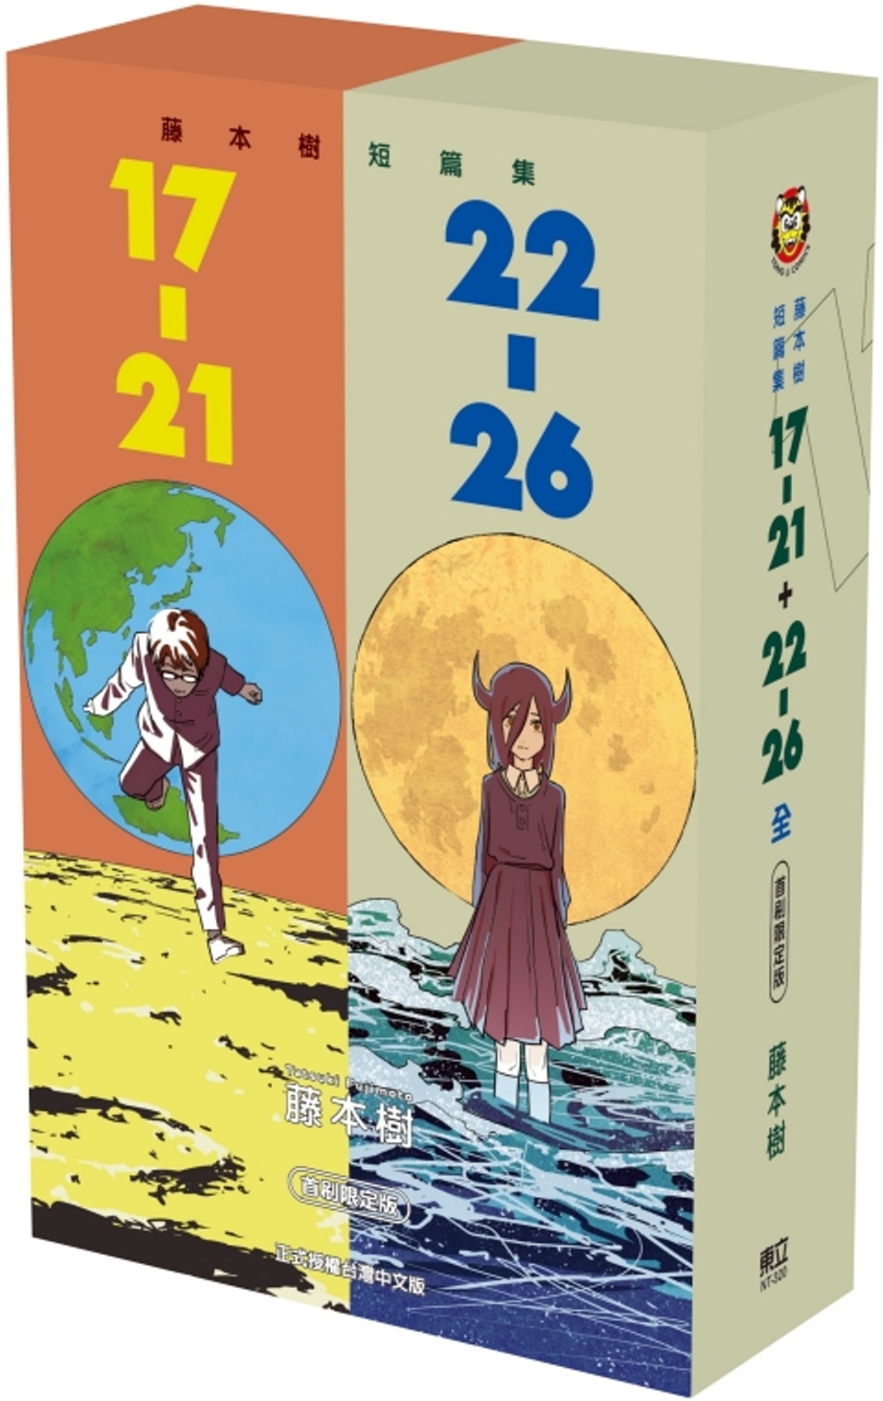 藤本樹短篇集 17-21+22-26 (首刷限定版)